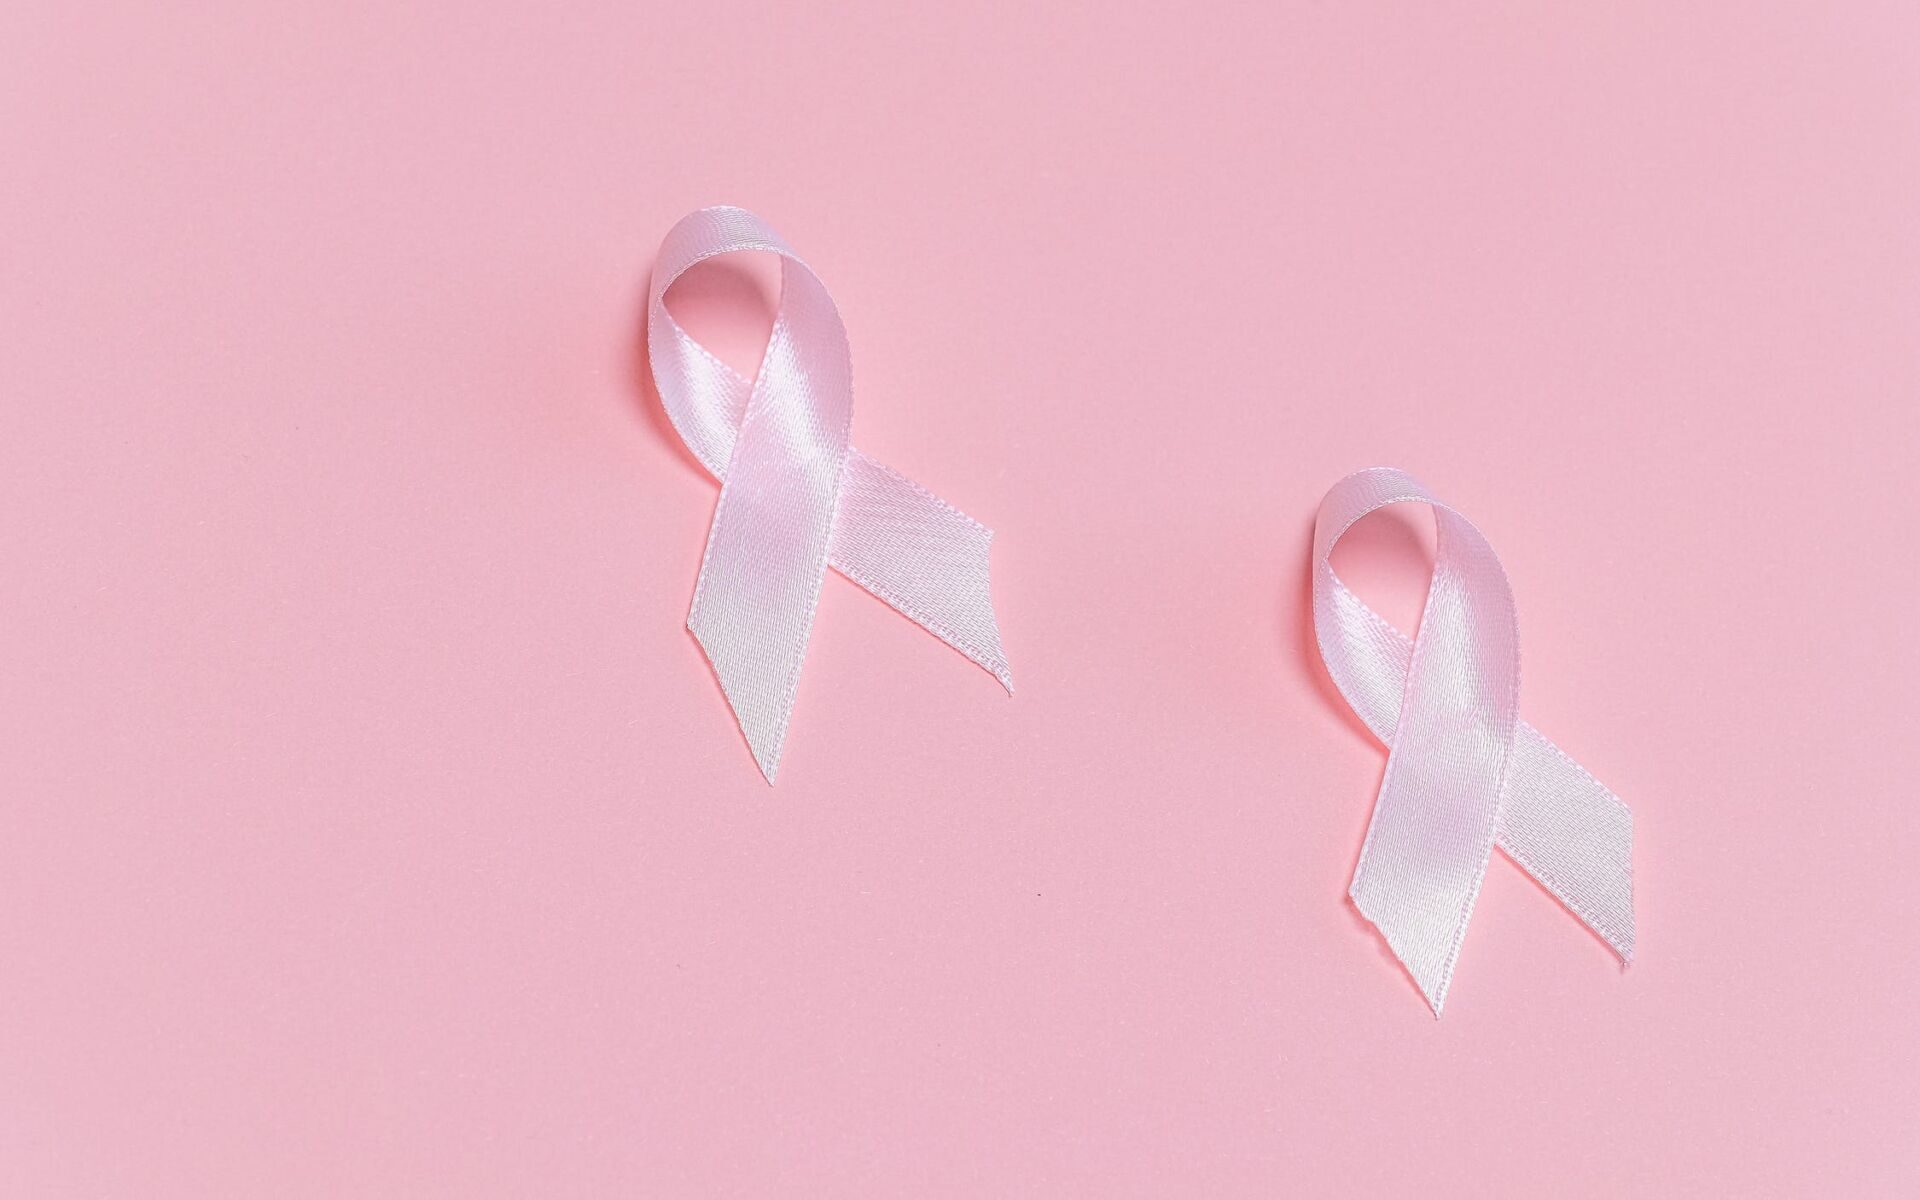 Bezpłatne badania mammograficzne we Wrocławiu i okolicach /fot. pexels